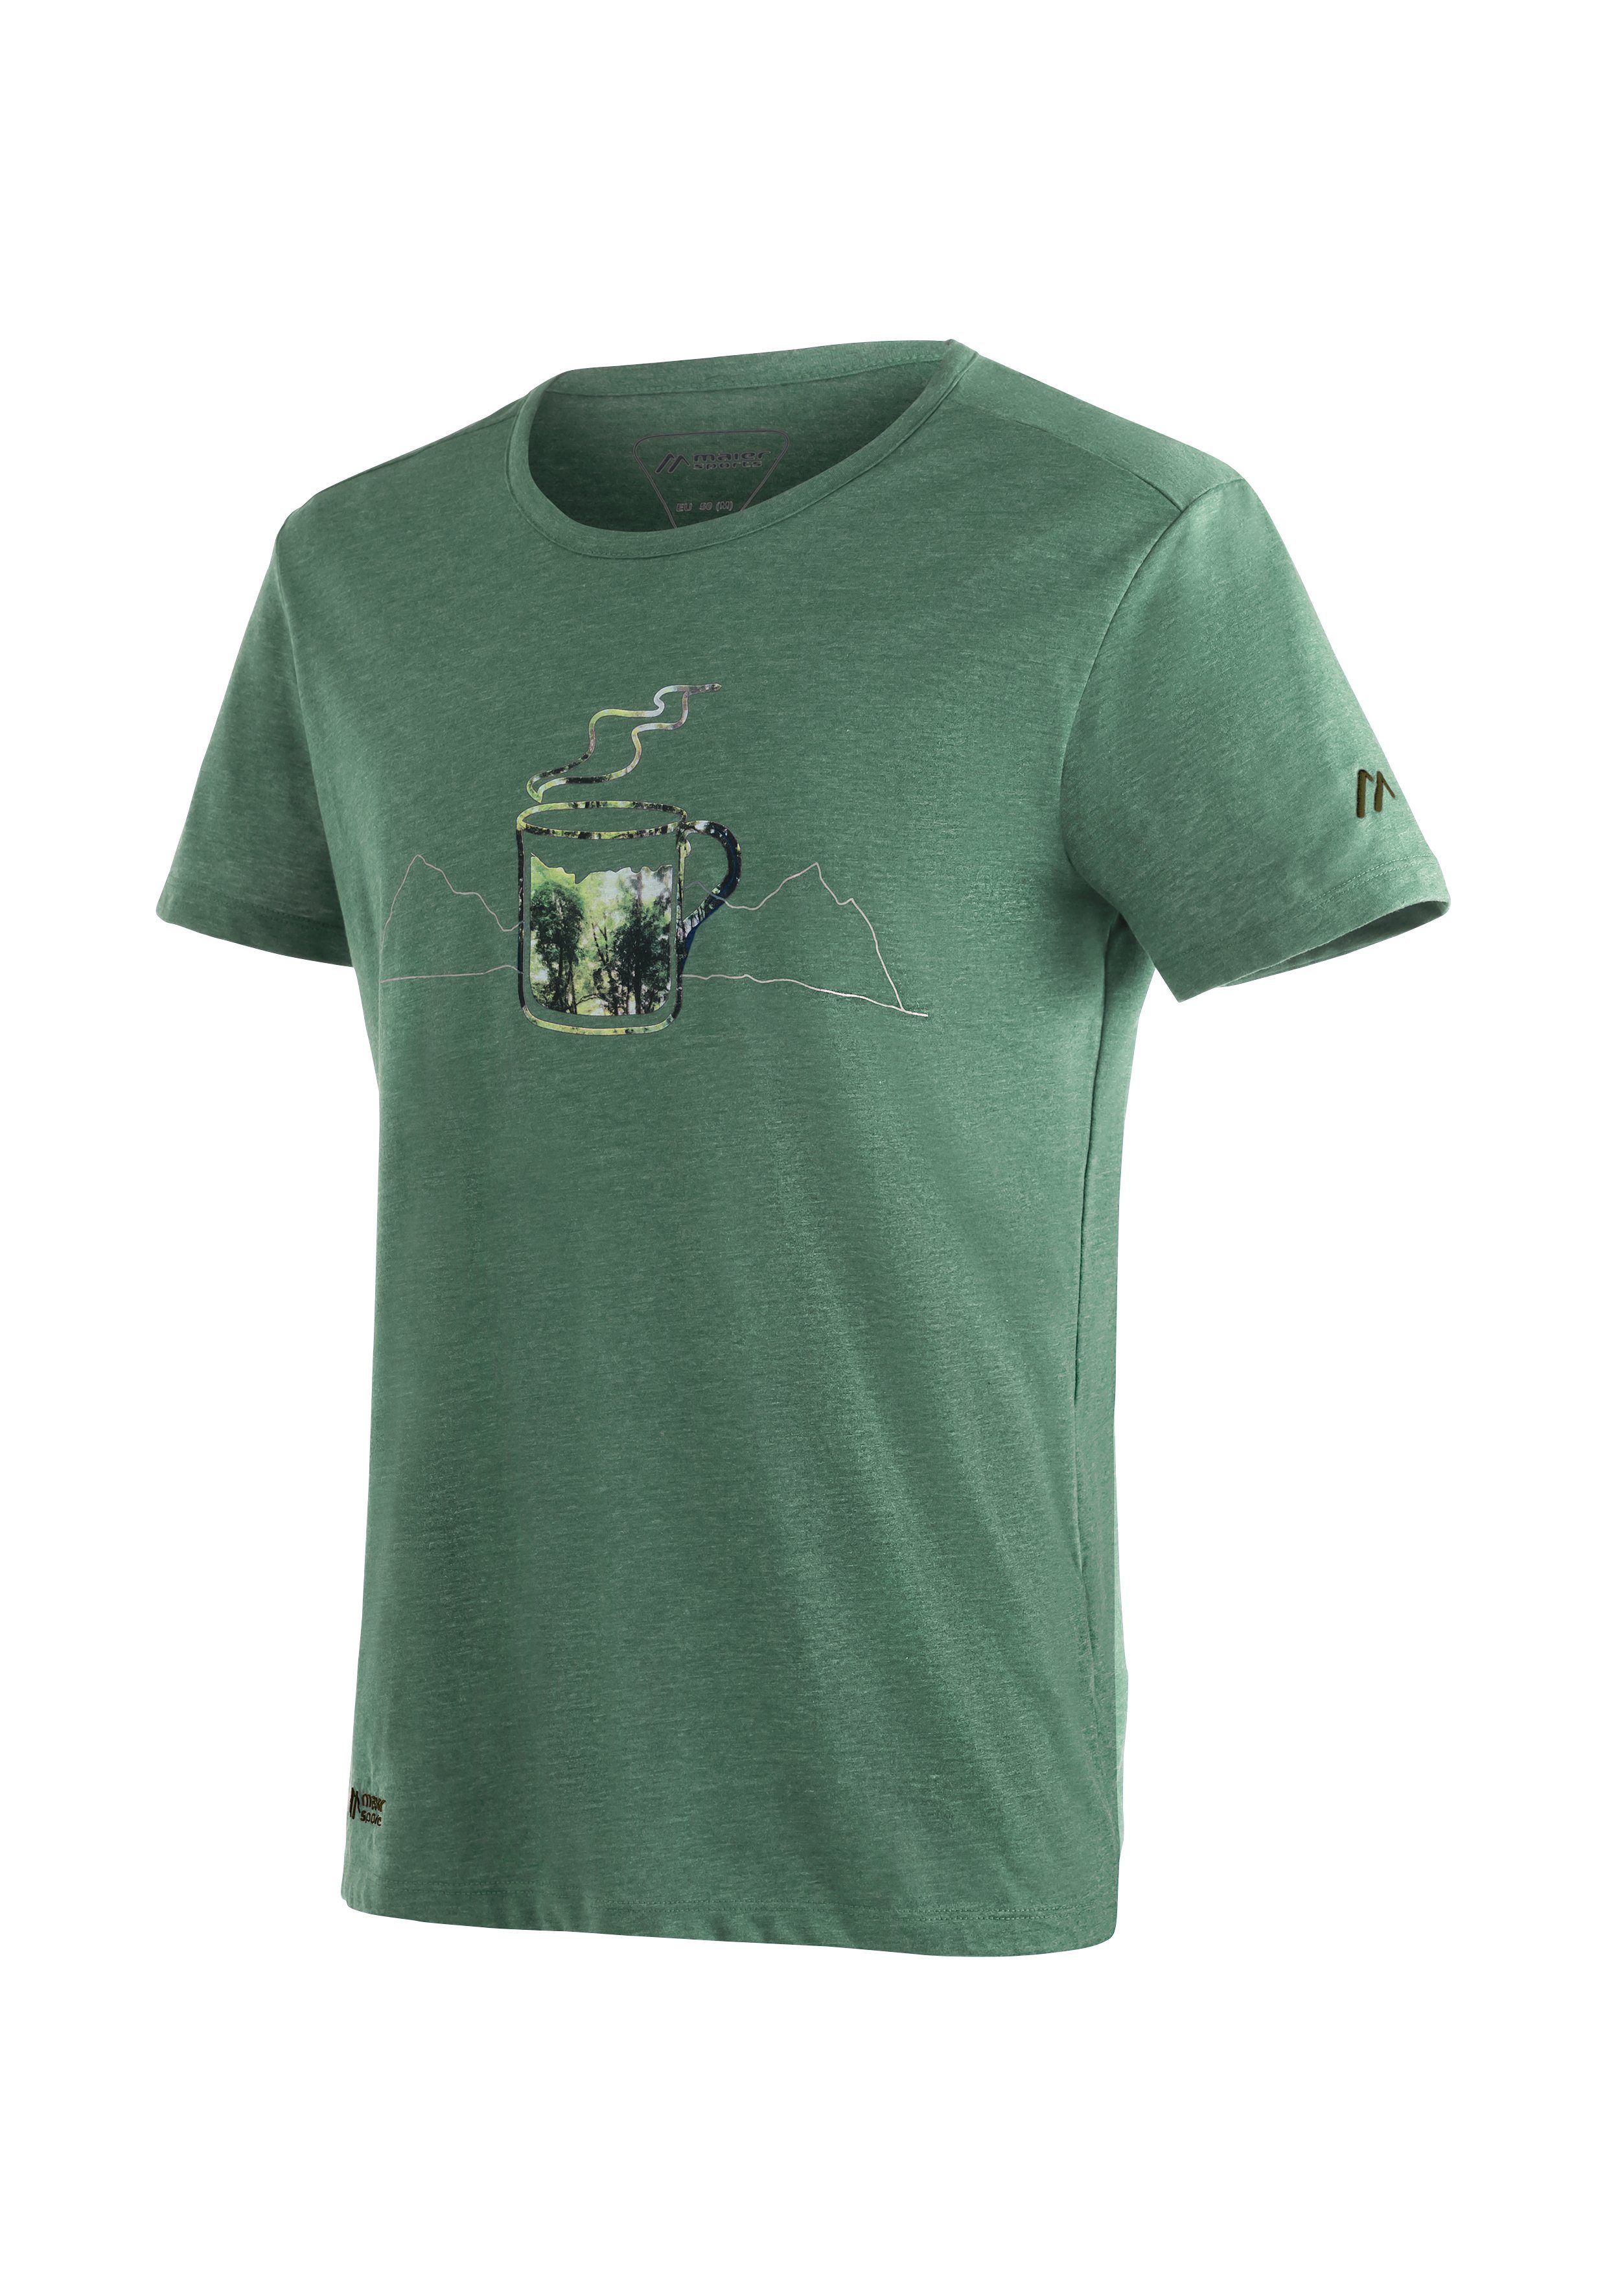 Maier Sports Funktionsshirt Coffee Break M Vielseitiges T-Shirt in ansprechender Melange-Optik hellgrün | Funktionsshirts